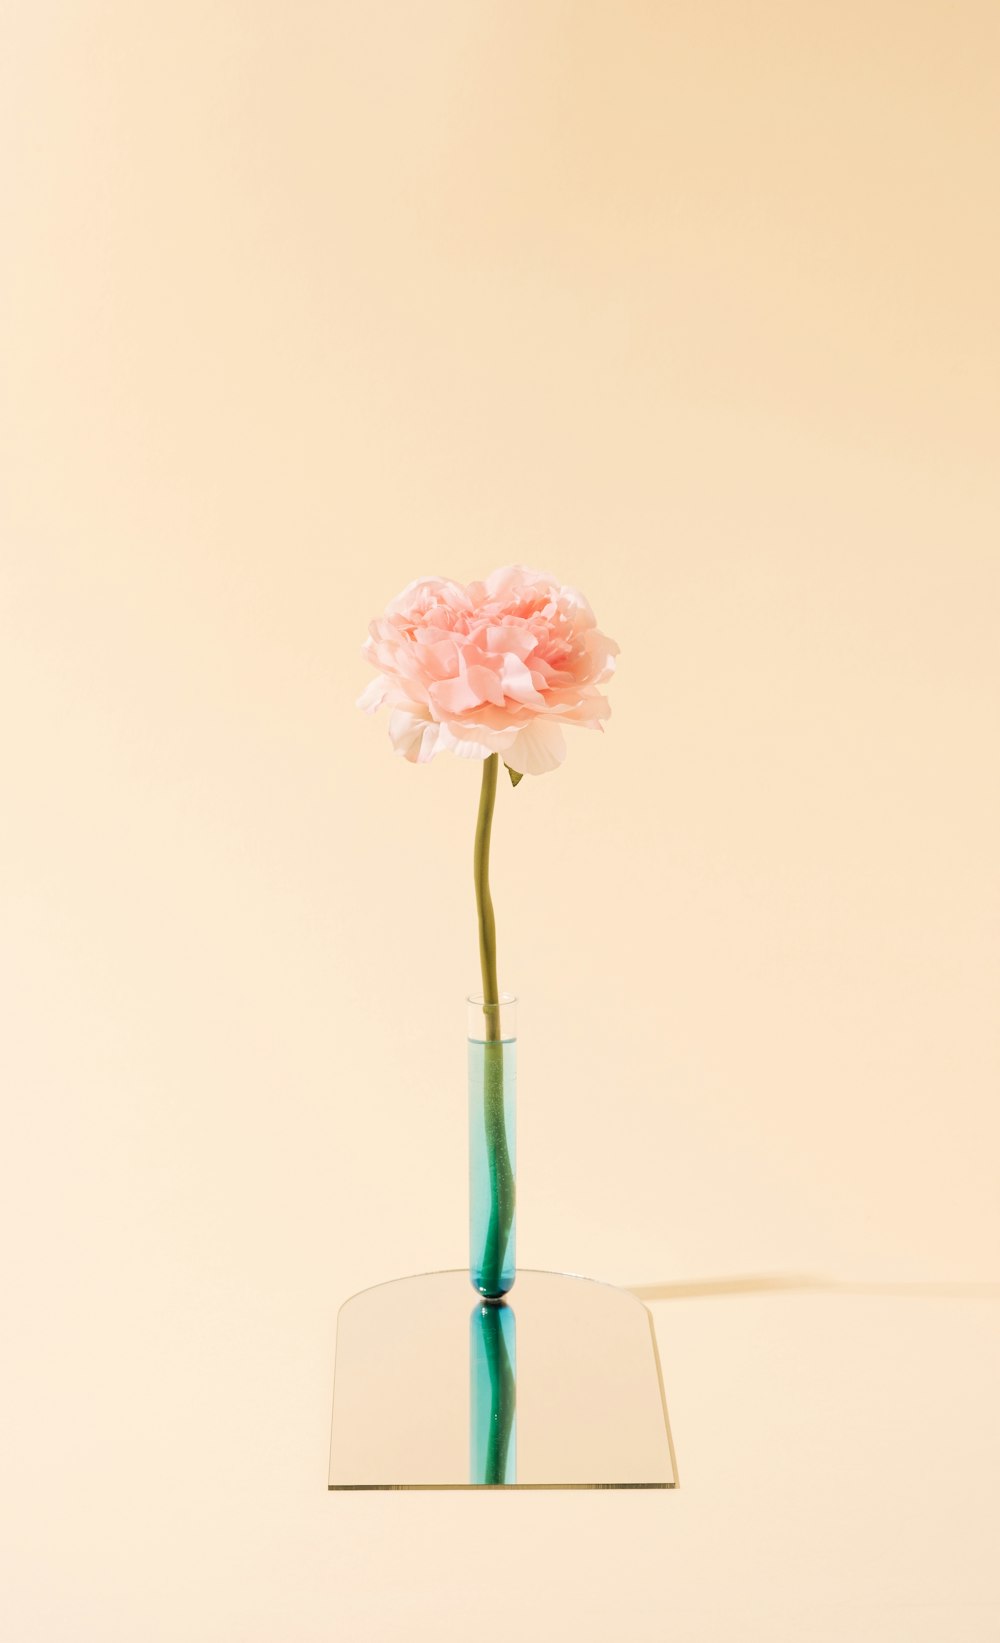 Un solo clavel rosa en un jarrón de cristal